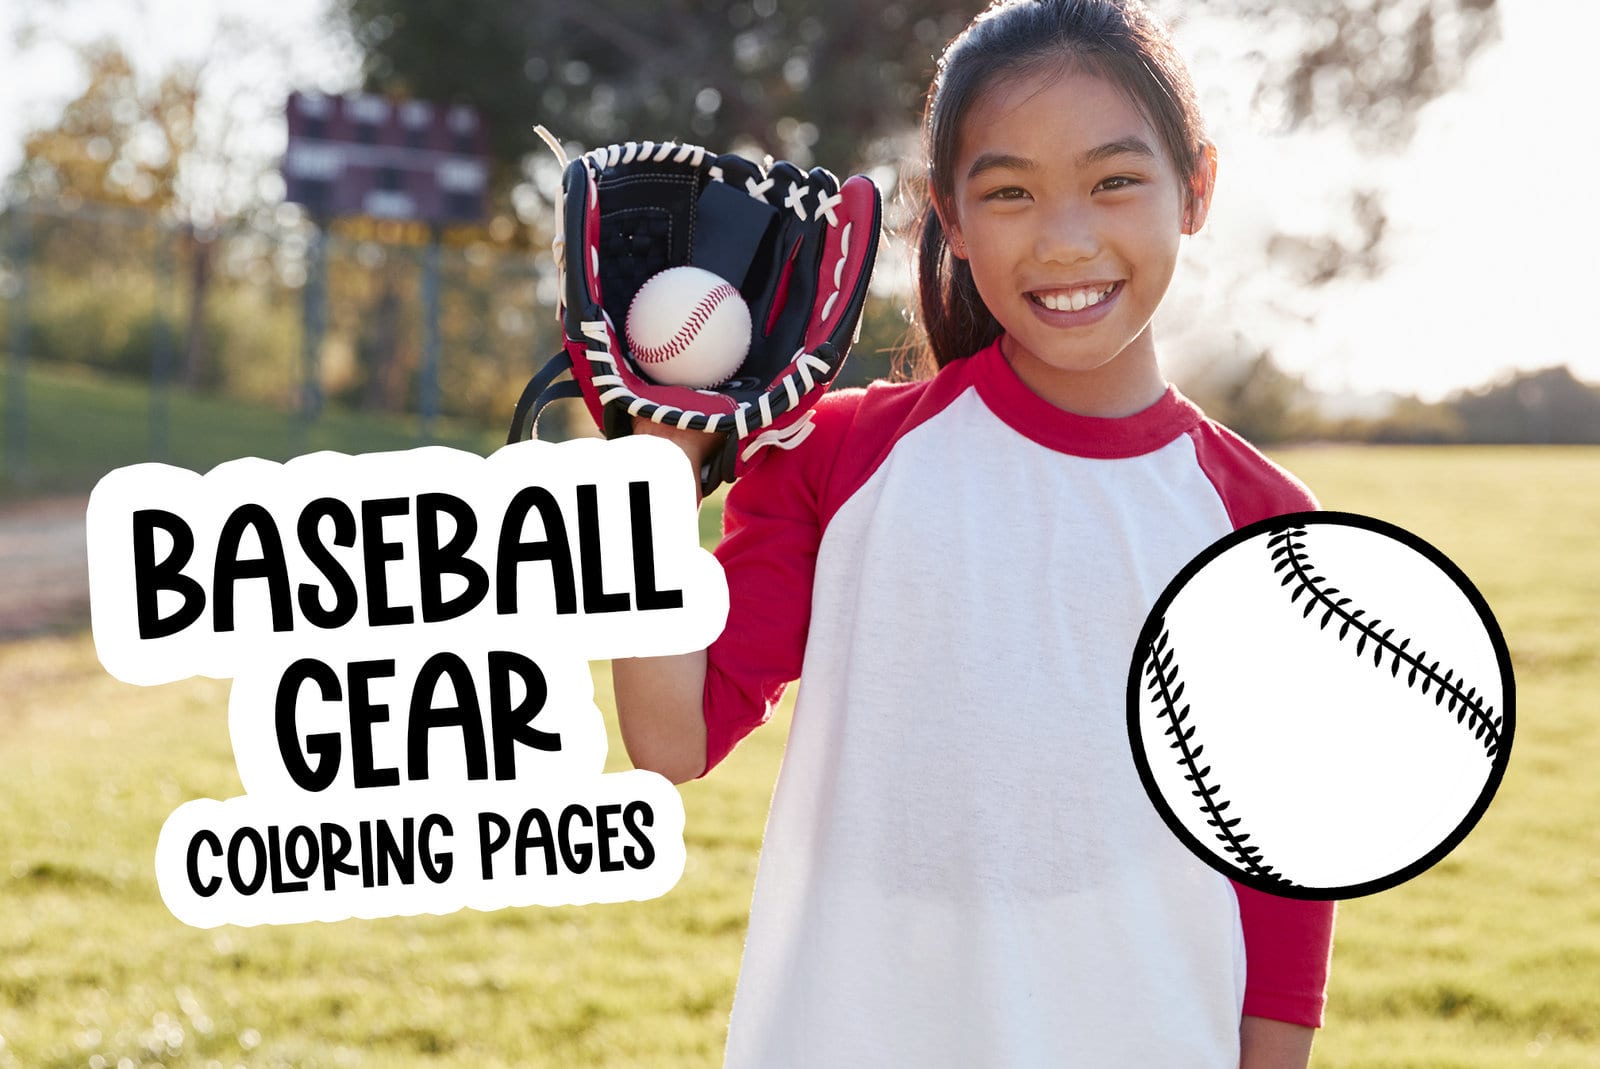 Baseball gear coloring pages balls bats mitts hats at